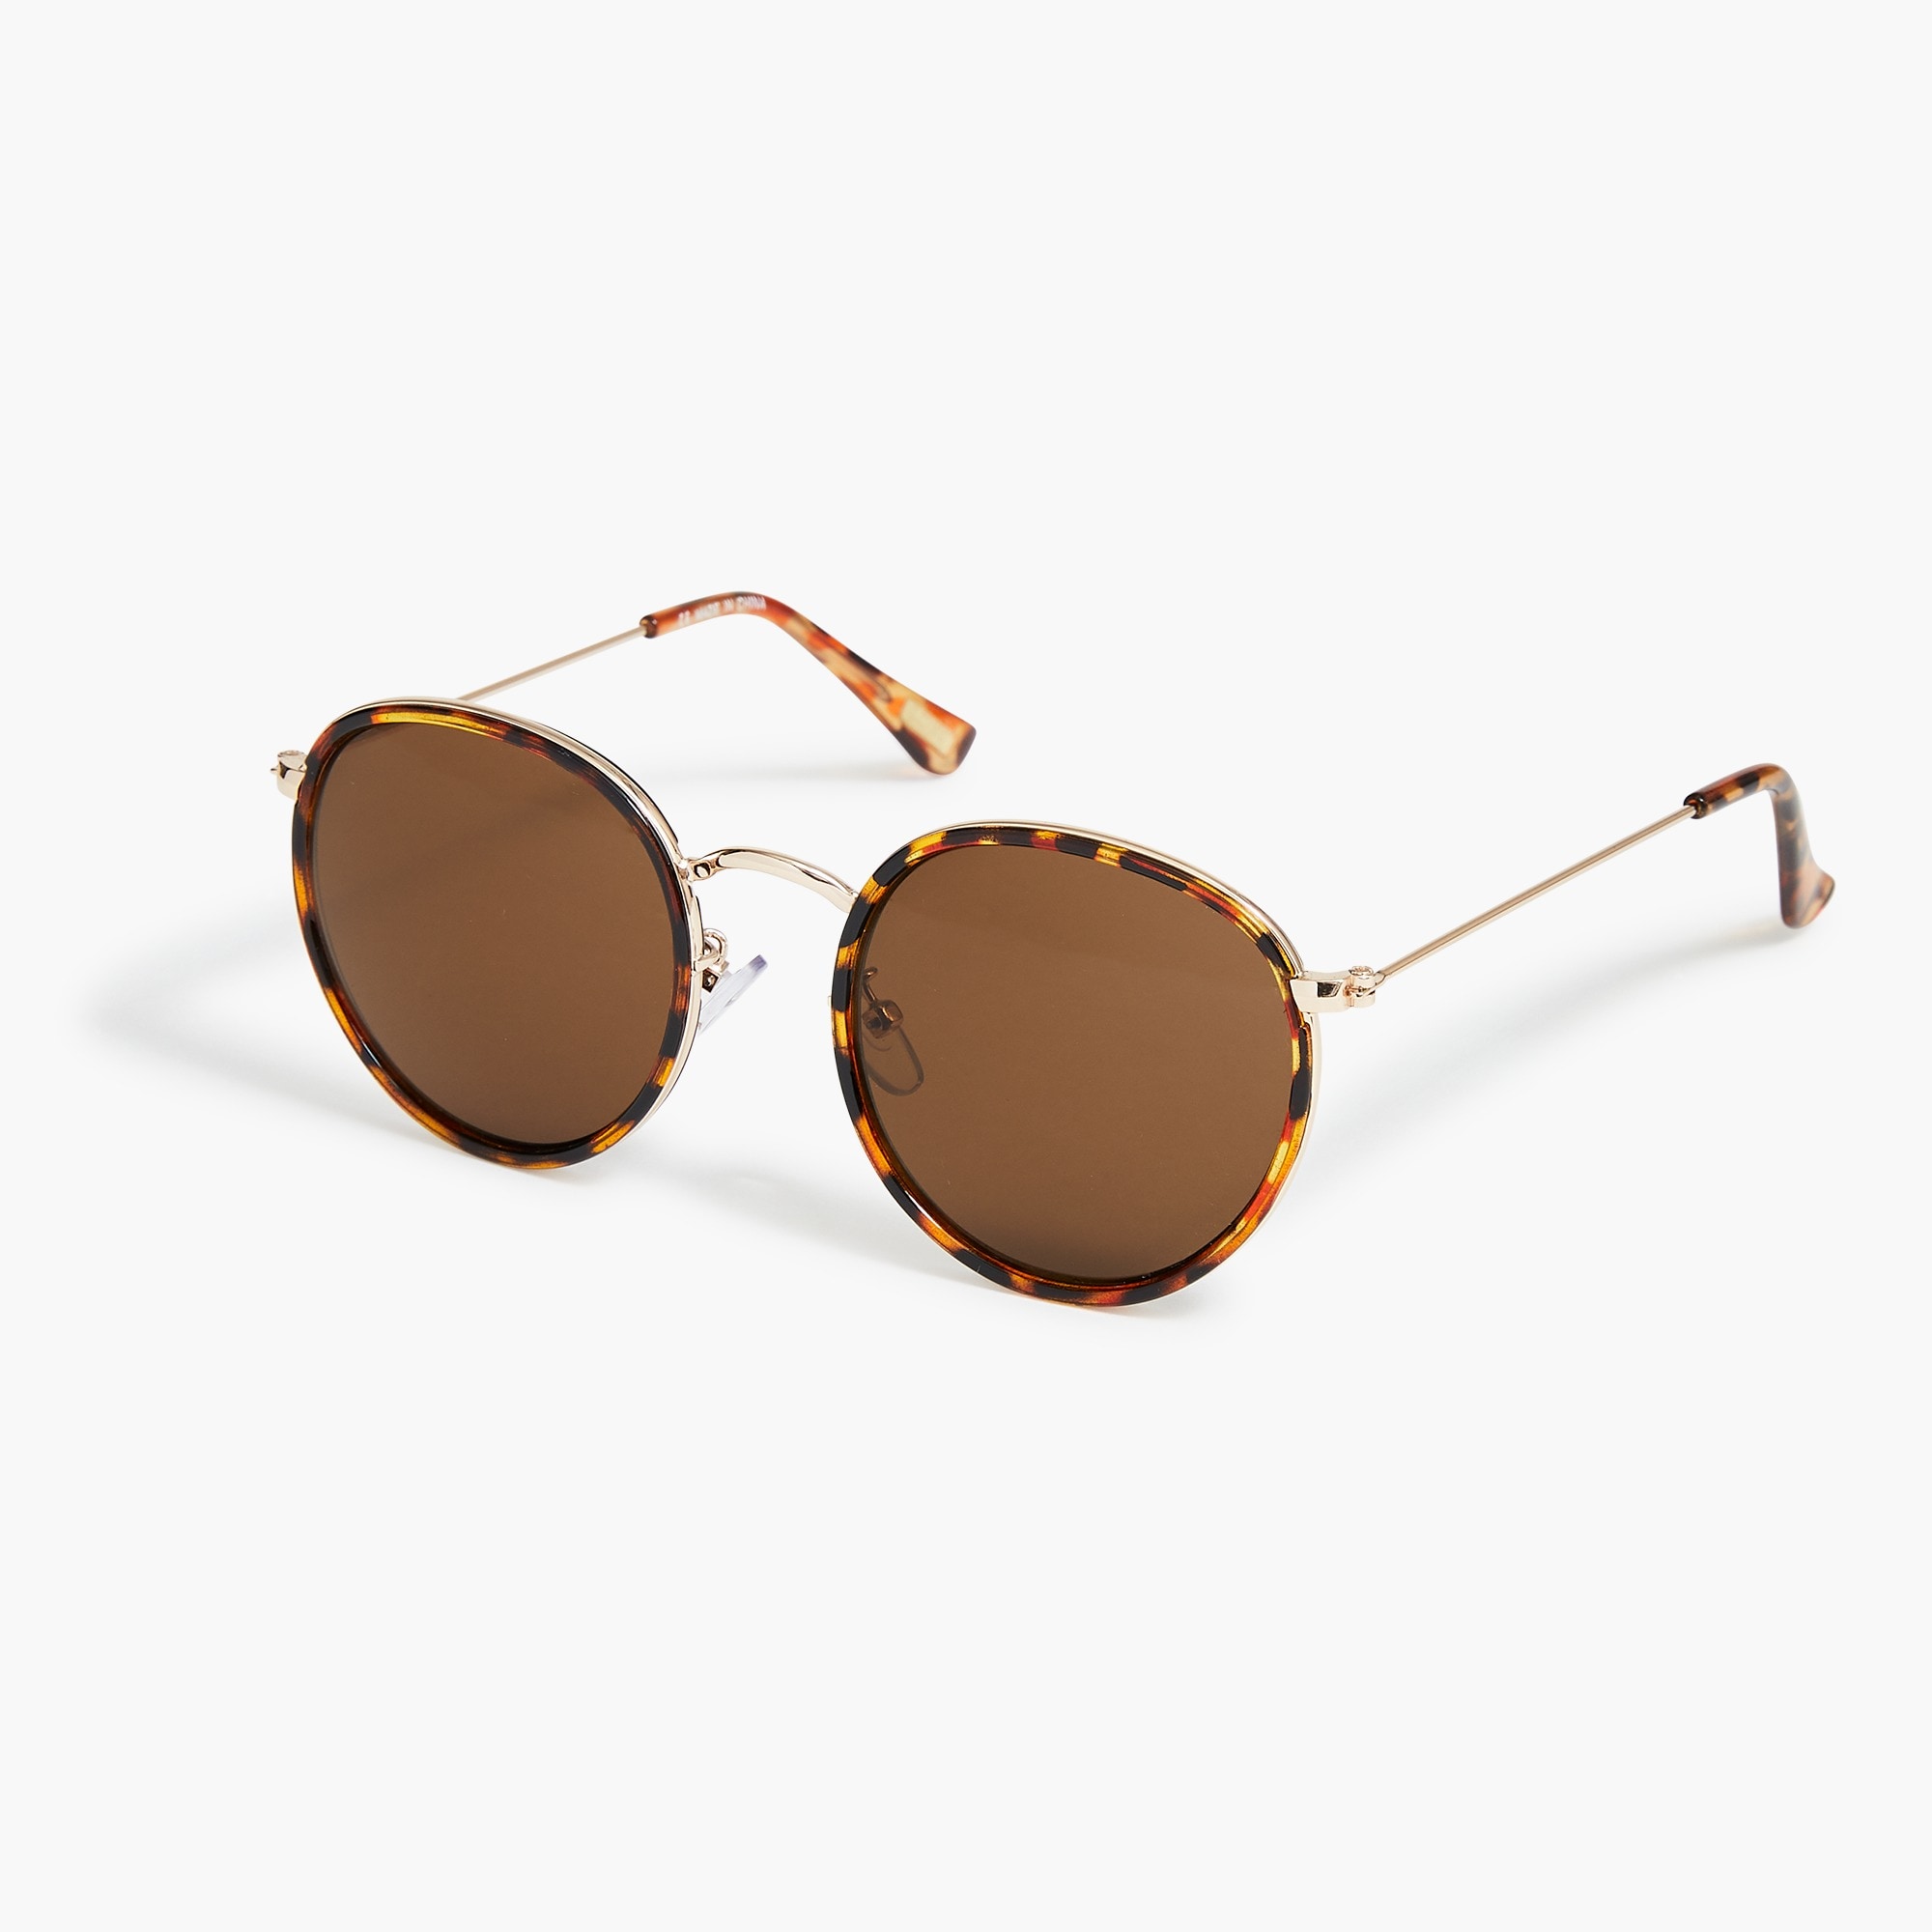  Rounded-frame tortoise sunglasses